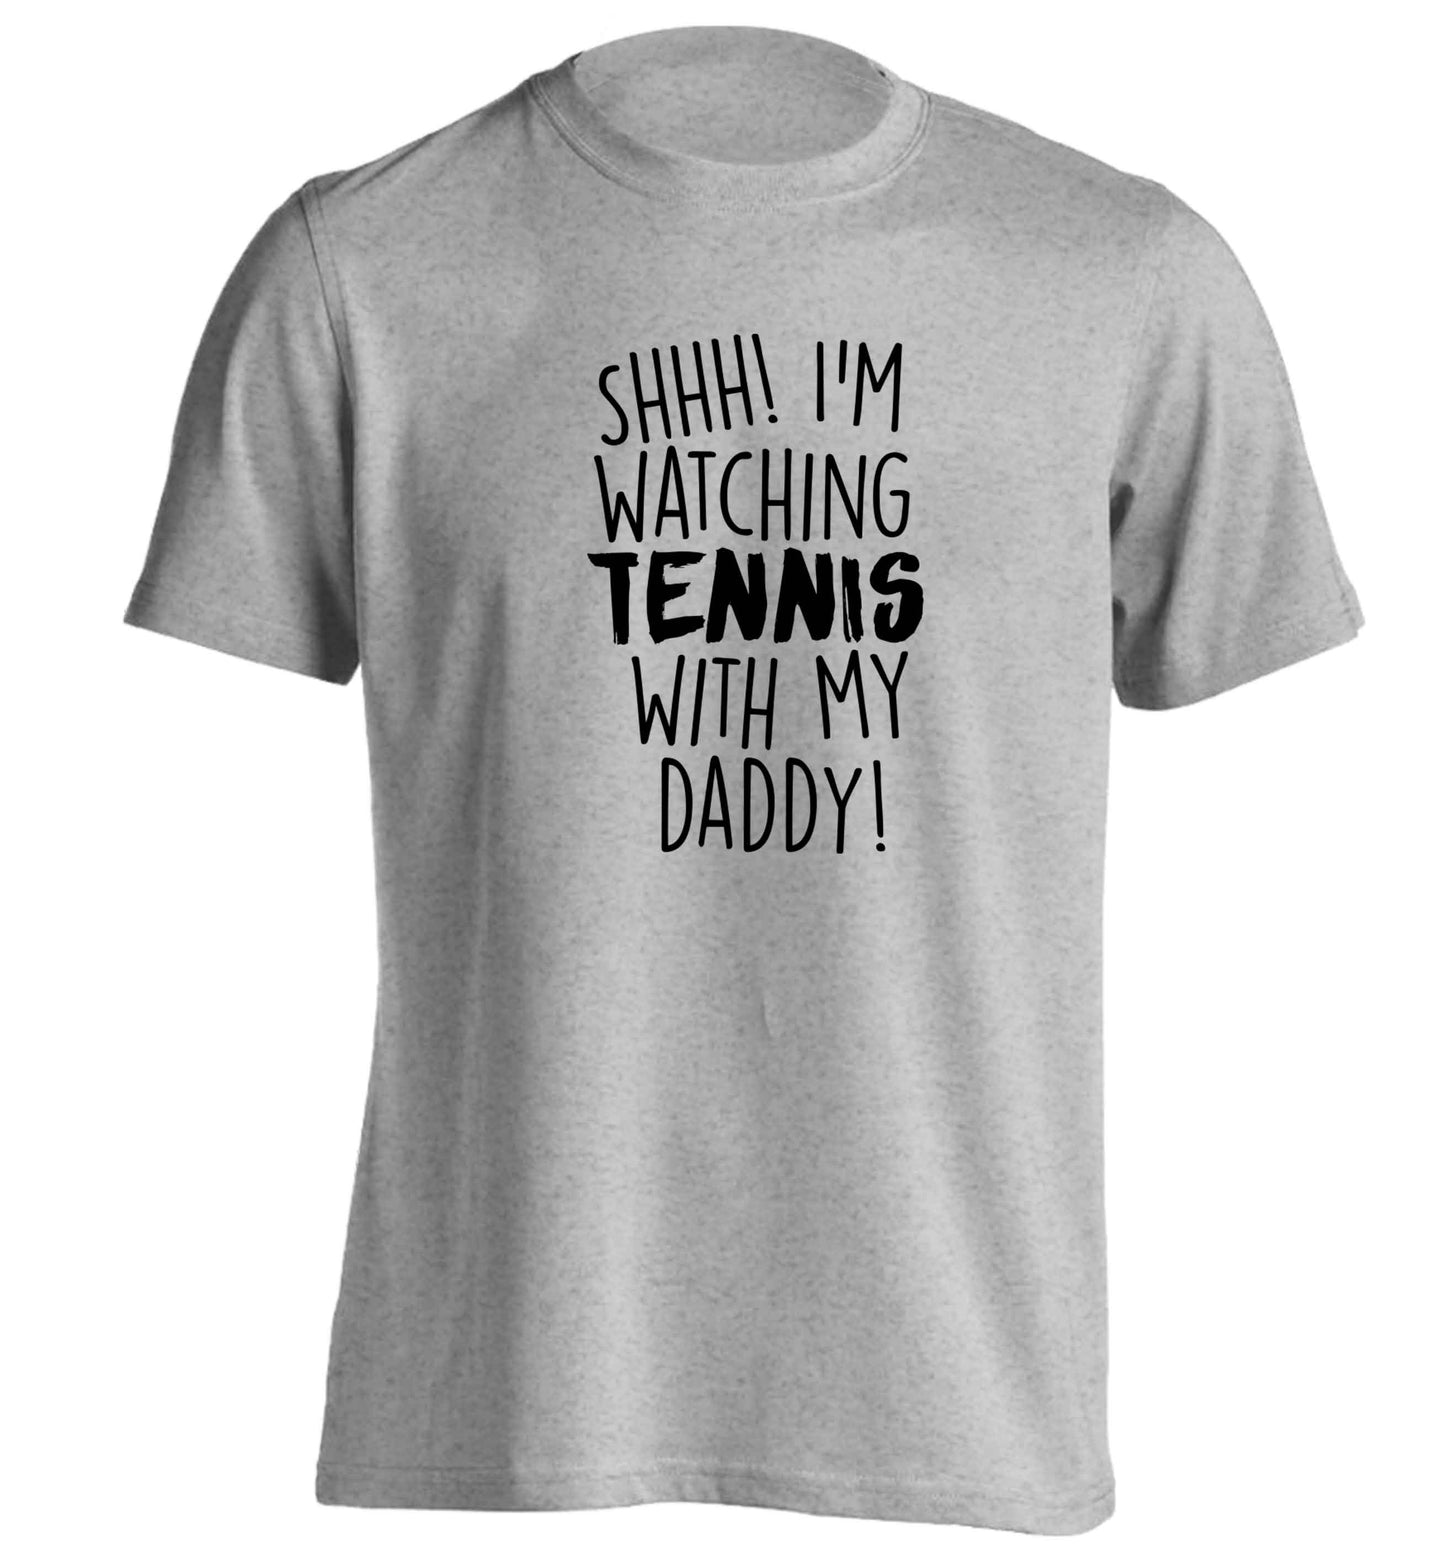 Shh! I'm watching tennis with my daddy! adults unisex grey Tshirt 2XL